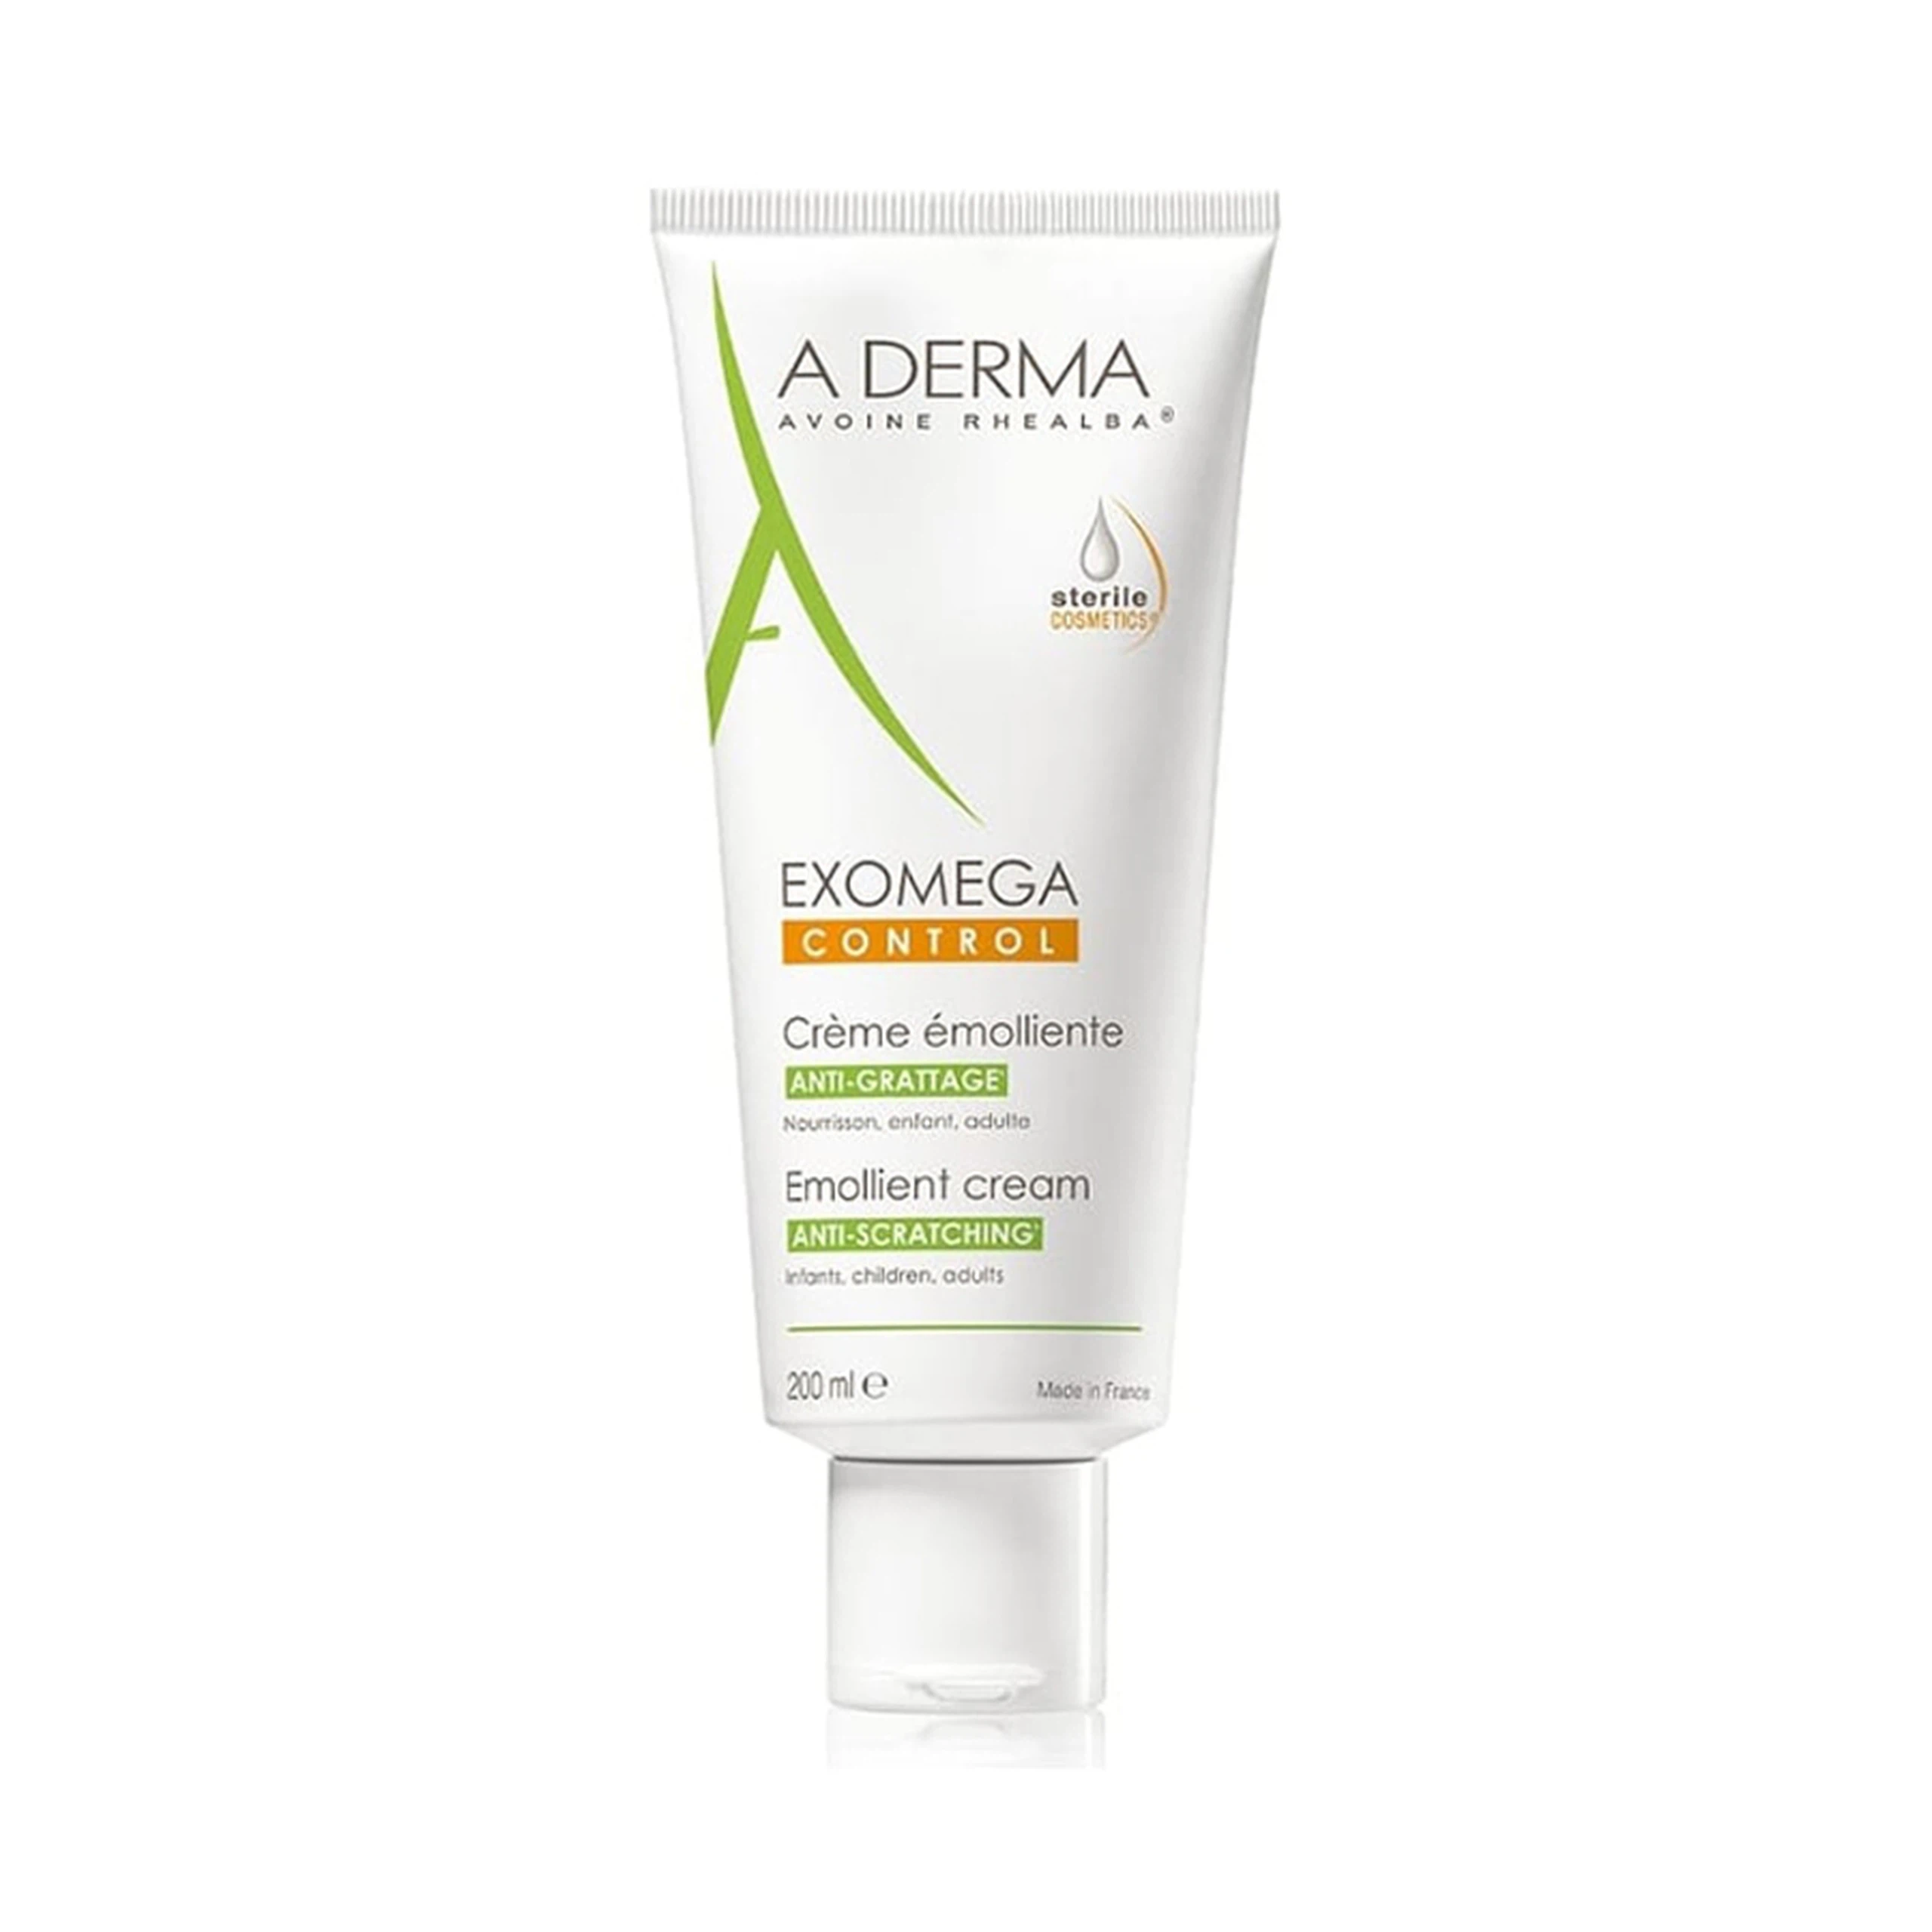 Kem dưỡng ẩm vô trùng A-Derma Exomega Control Emollient Cream giảm ngứa cho da mặt và toàn thân (200ml)